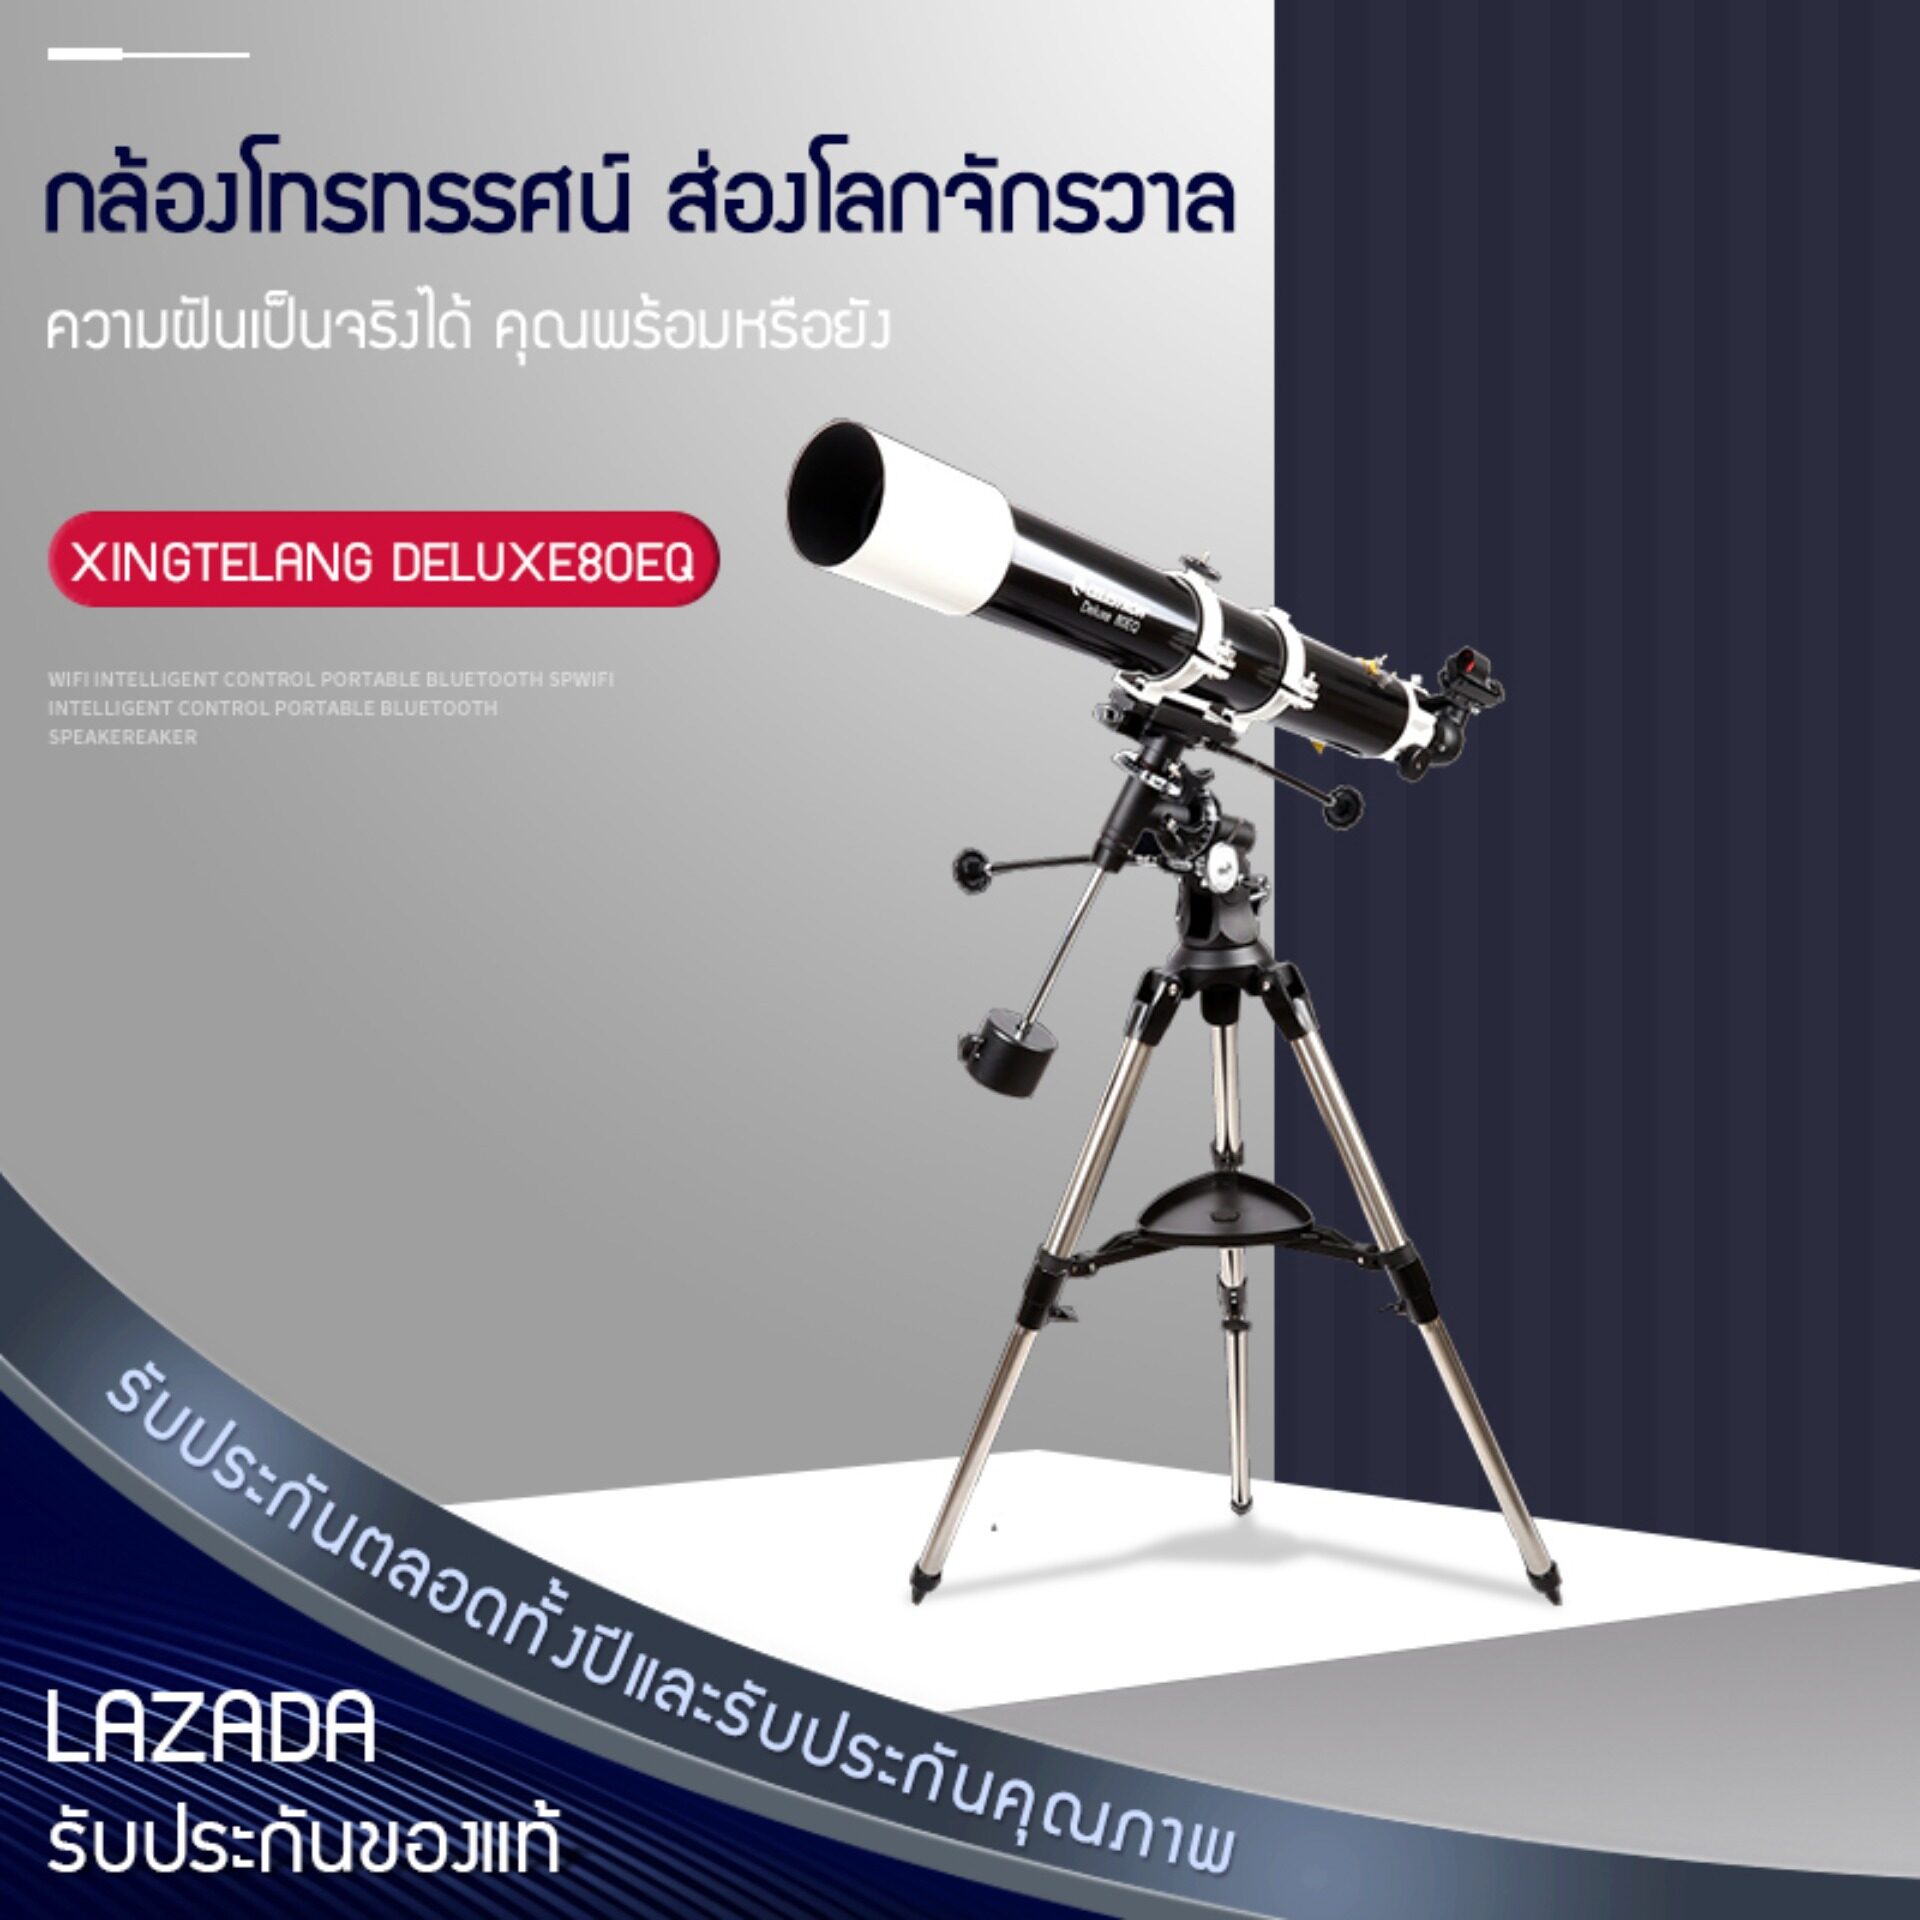 Hali CELESTRON Deluxe 80EQ กล้องโทรทรรศน์ดาราศาสตร์มืออาชีพ สำหรับผู้ใหญ่ กล้องดูดาวดาราศาสตร์ กล้องส่องดาวระยะไกล